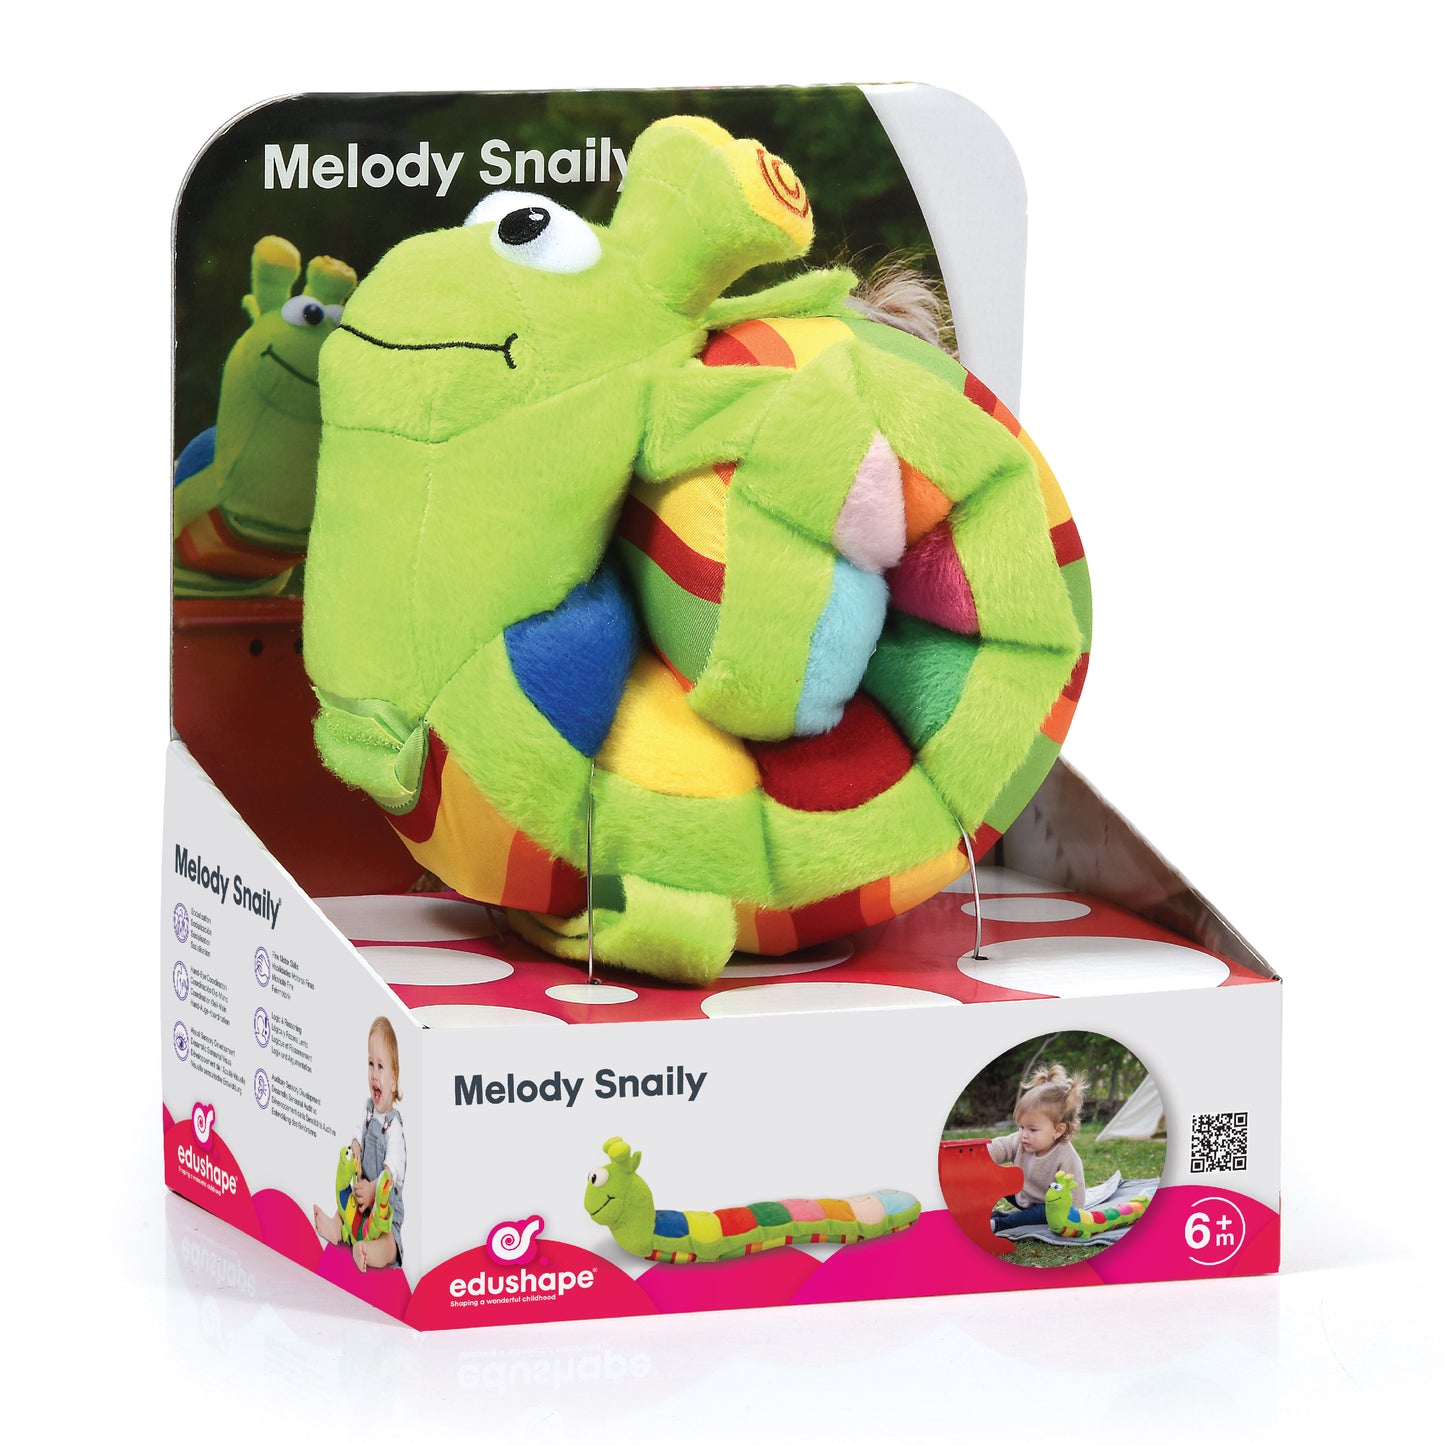 Melody Snaily